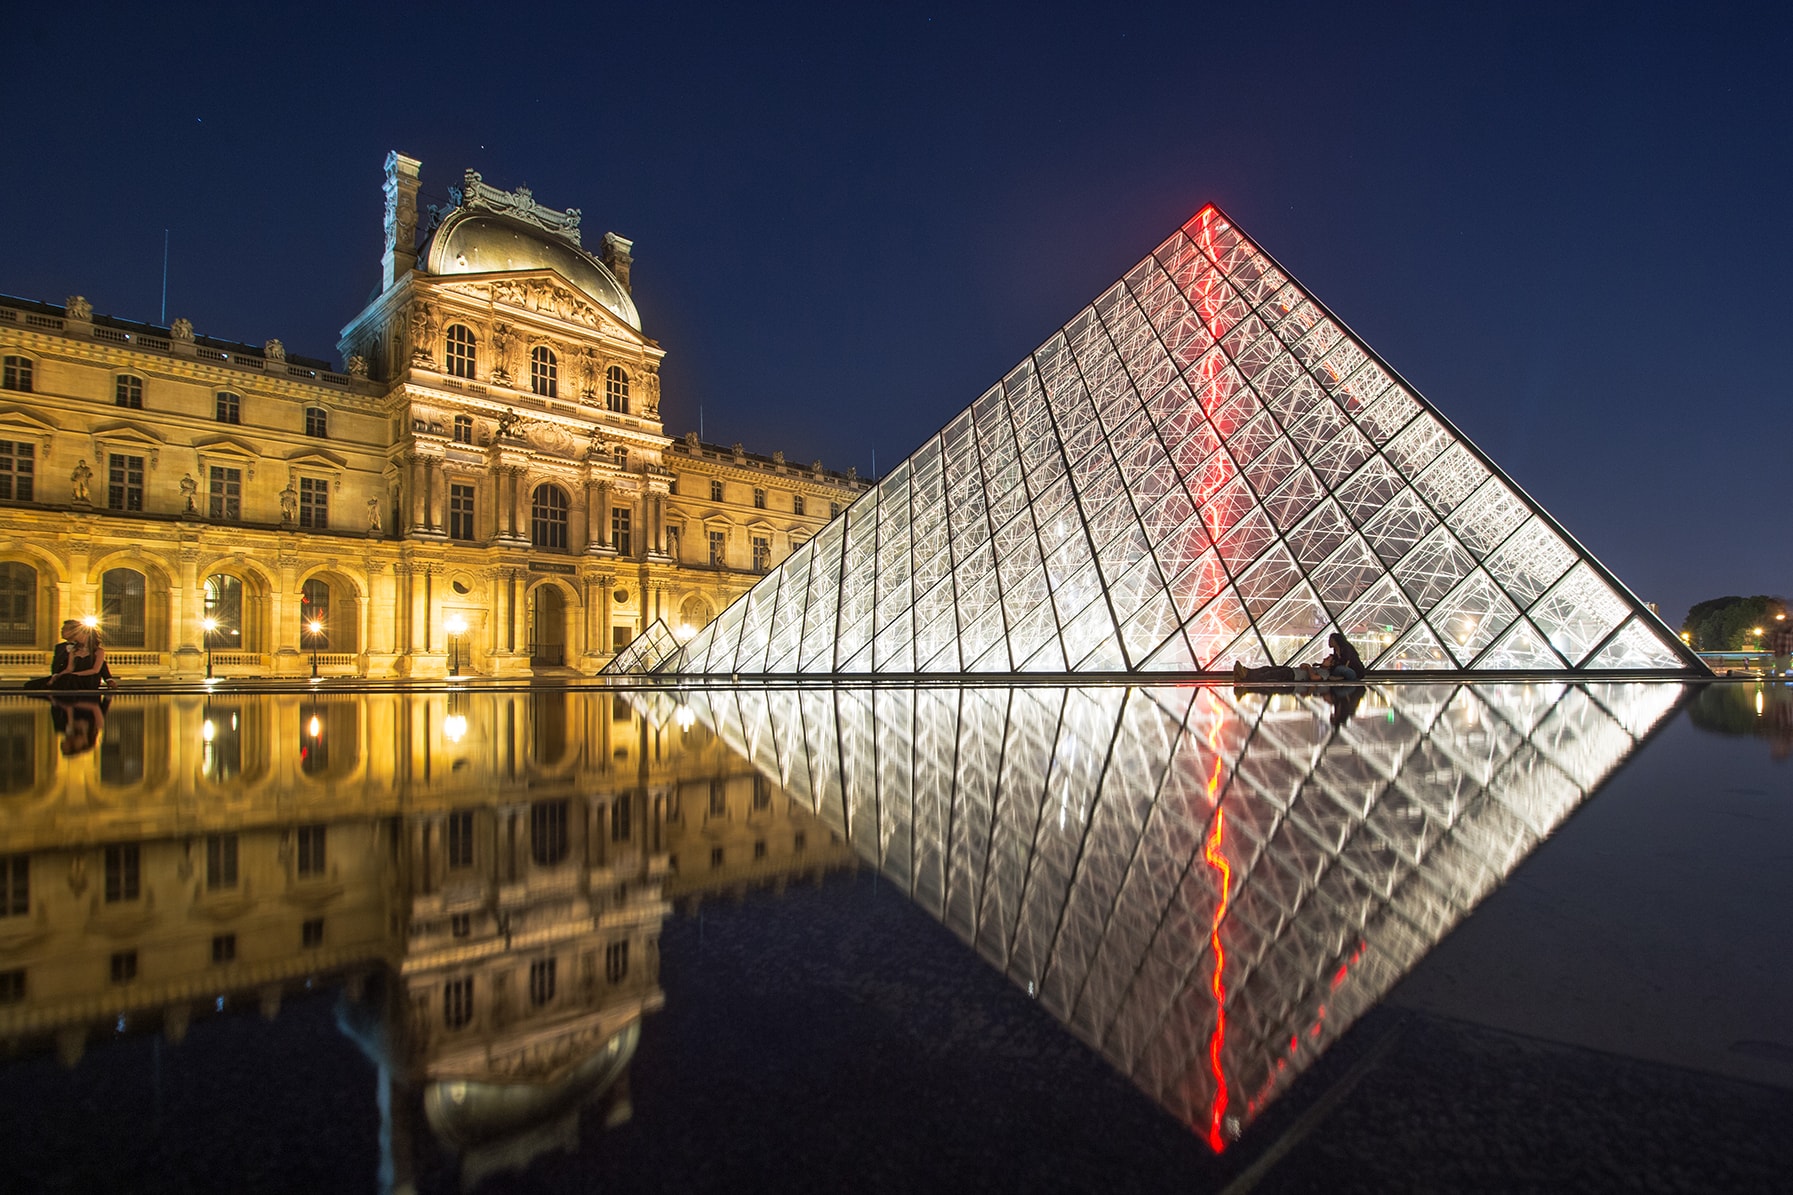 Louvre Pyramide Airbnb concours nuit chambre visite inscription